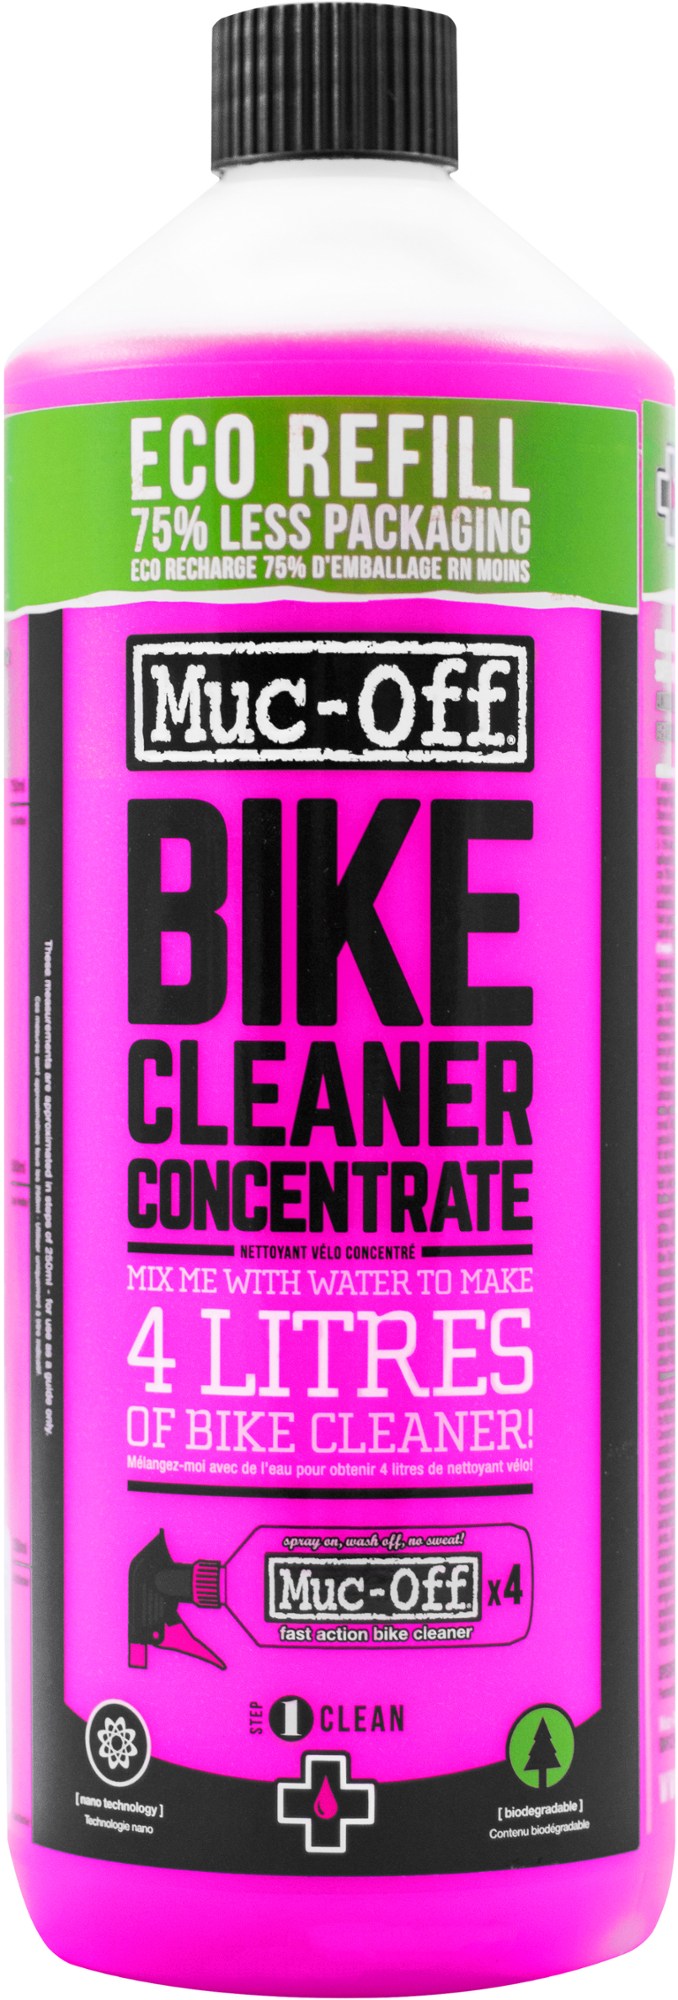 концентрат универсального очистителя muc off bike cleaner concentrate 500ml Концентрат для чистки велосипедов Muc-Off